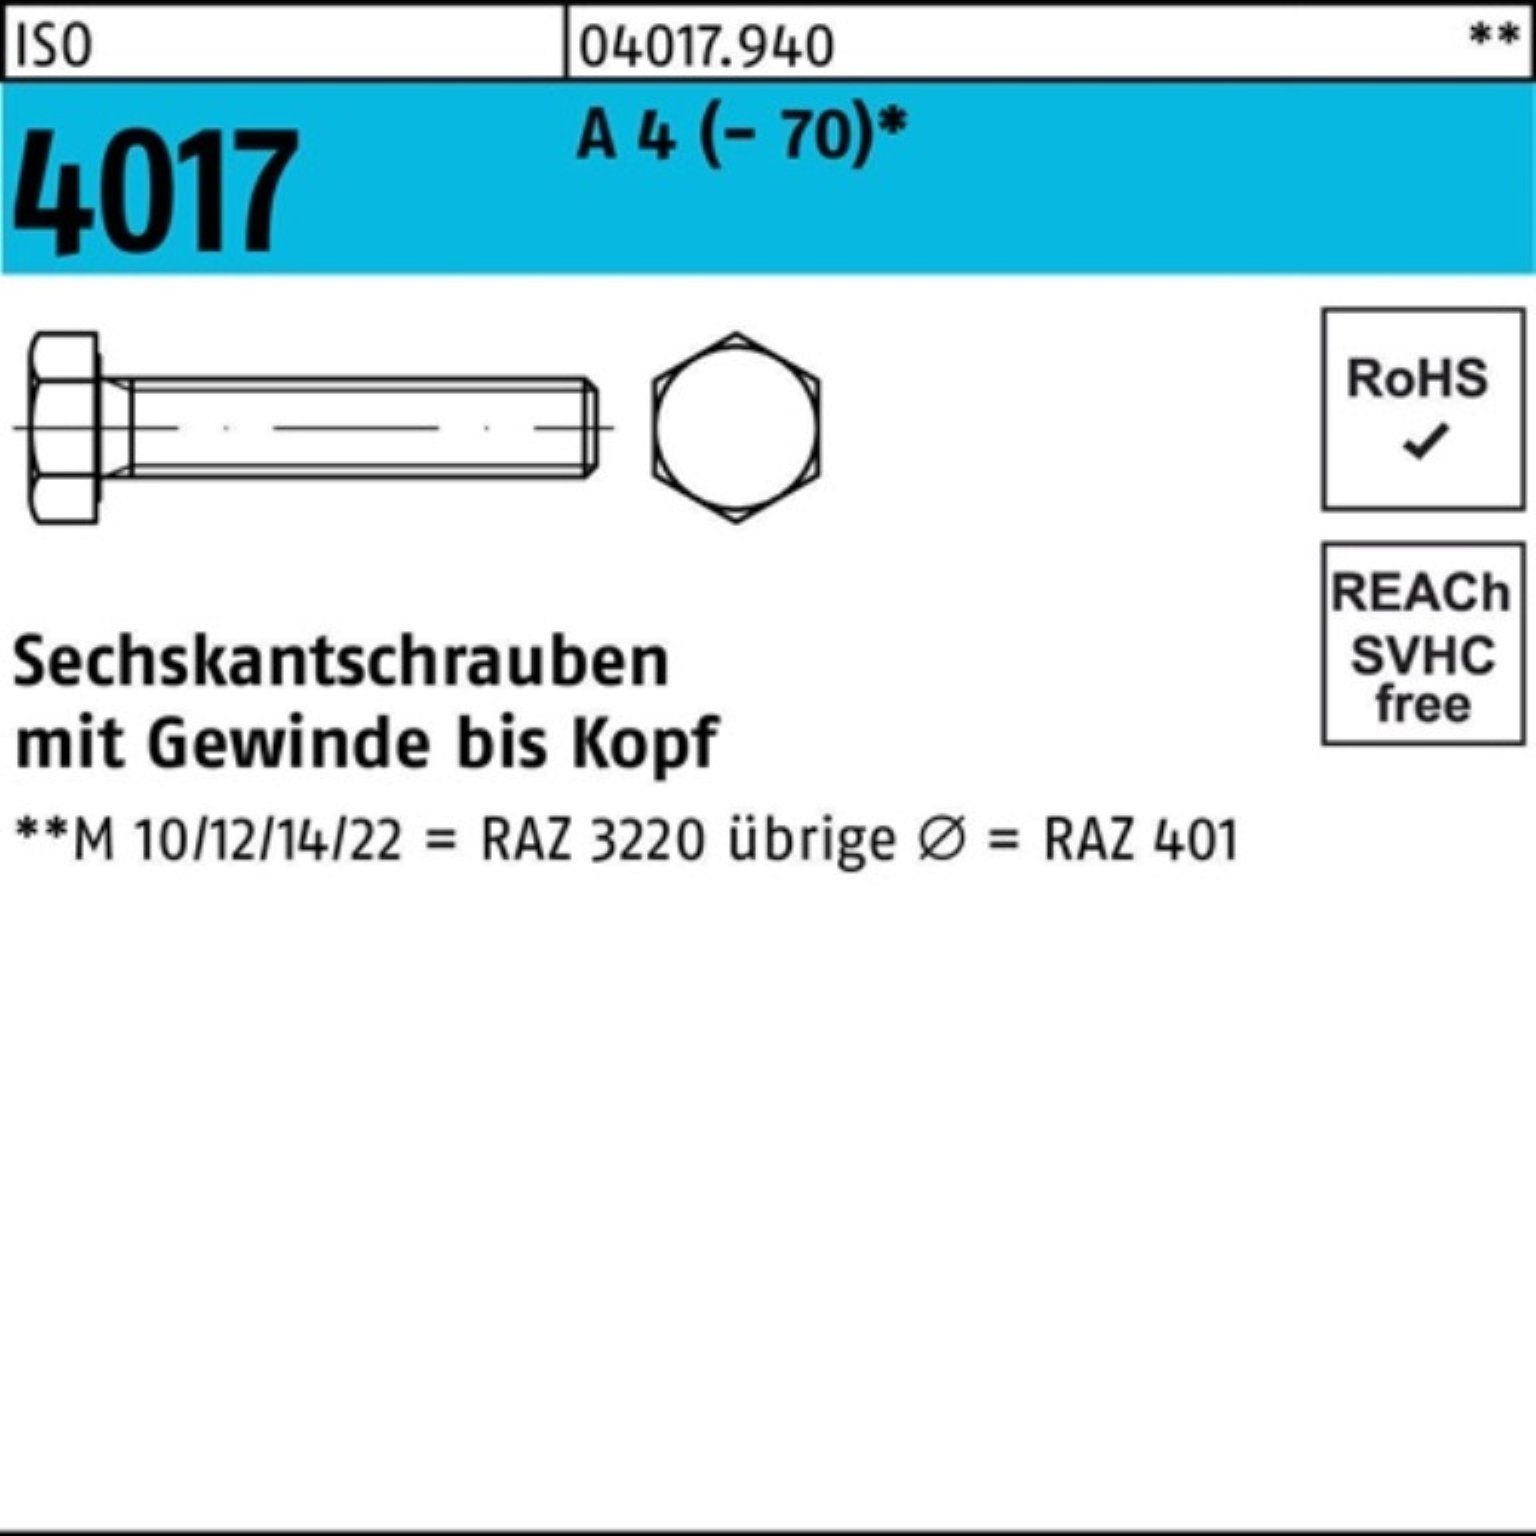 Bufab Sechskantschraube 200er Pack Sechskantschraube ISO 4017 VG M5x 35 A 4 (70) 200 Stück | Schrauben